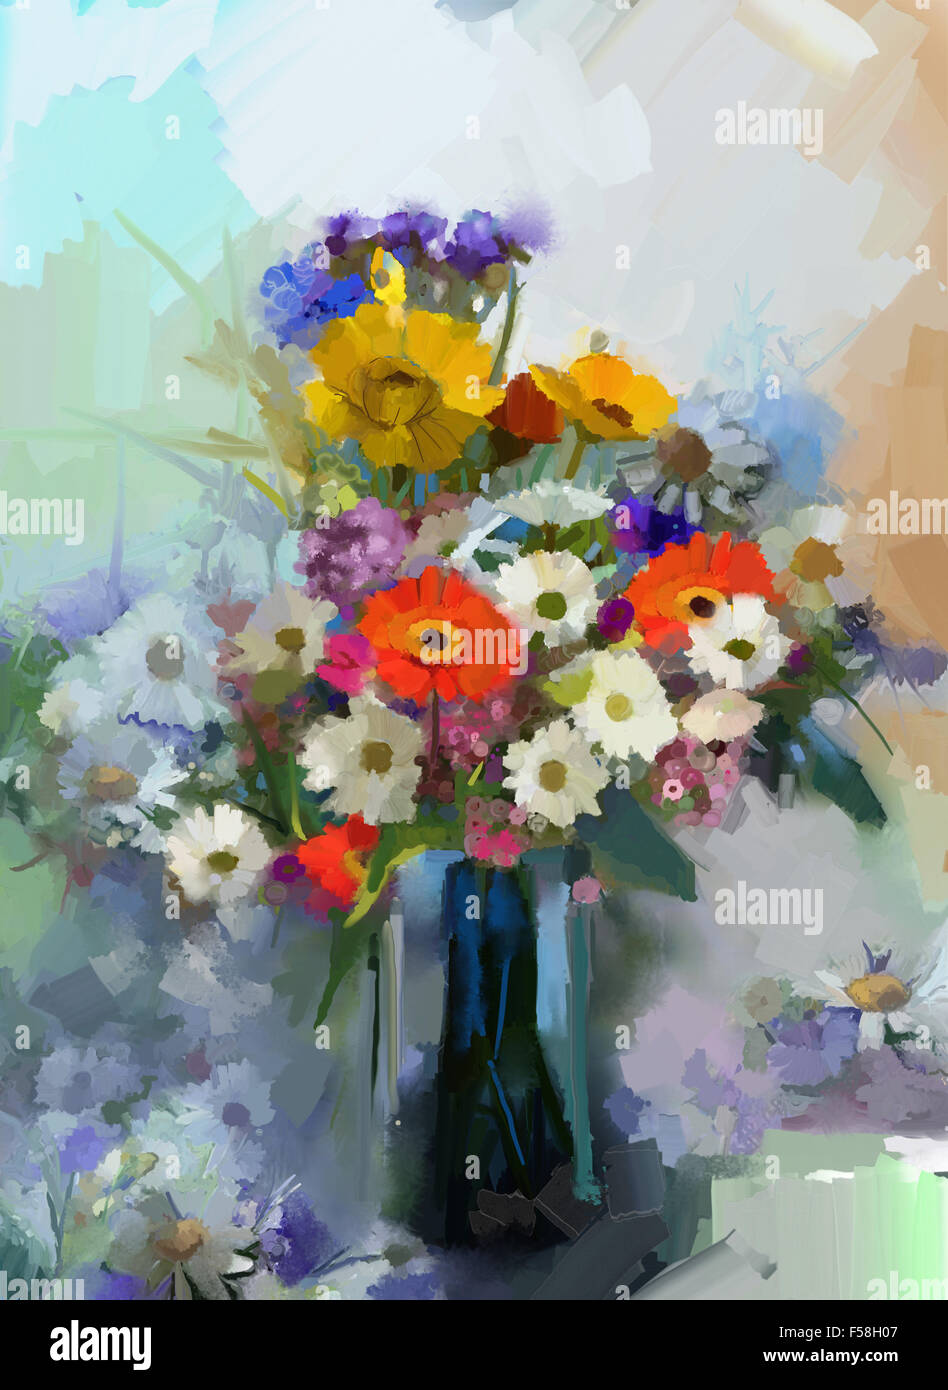 Vaso con ancora in vita un bouquet di fiori. Pittura Di Olio Foto Stock